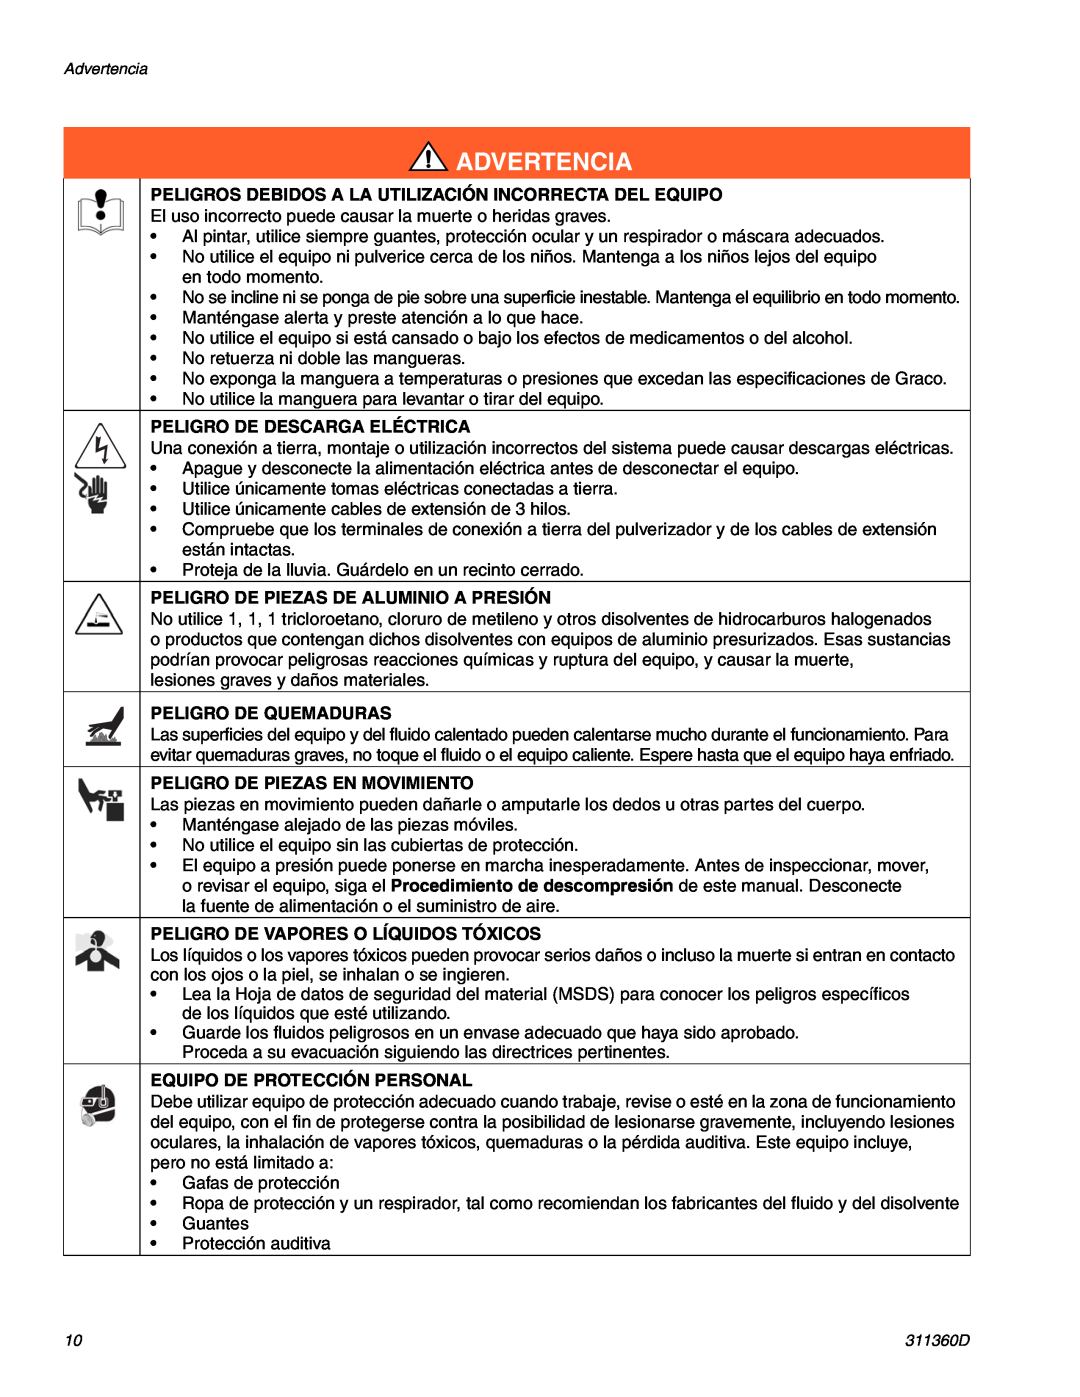 Graco Inc 695 LOW Peligros Debidos A La Utilización Incorrecta Del Equipo, Peligro De Descarga Eléctrica, Advertencia 